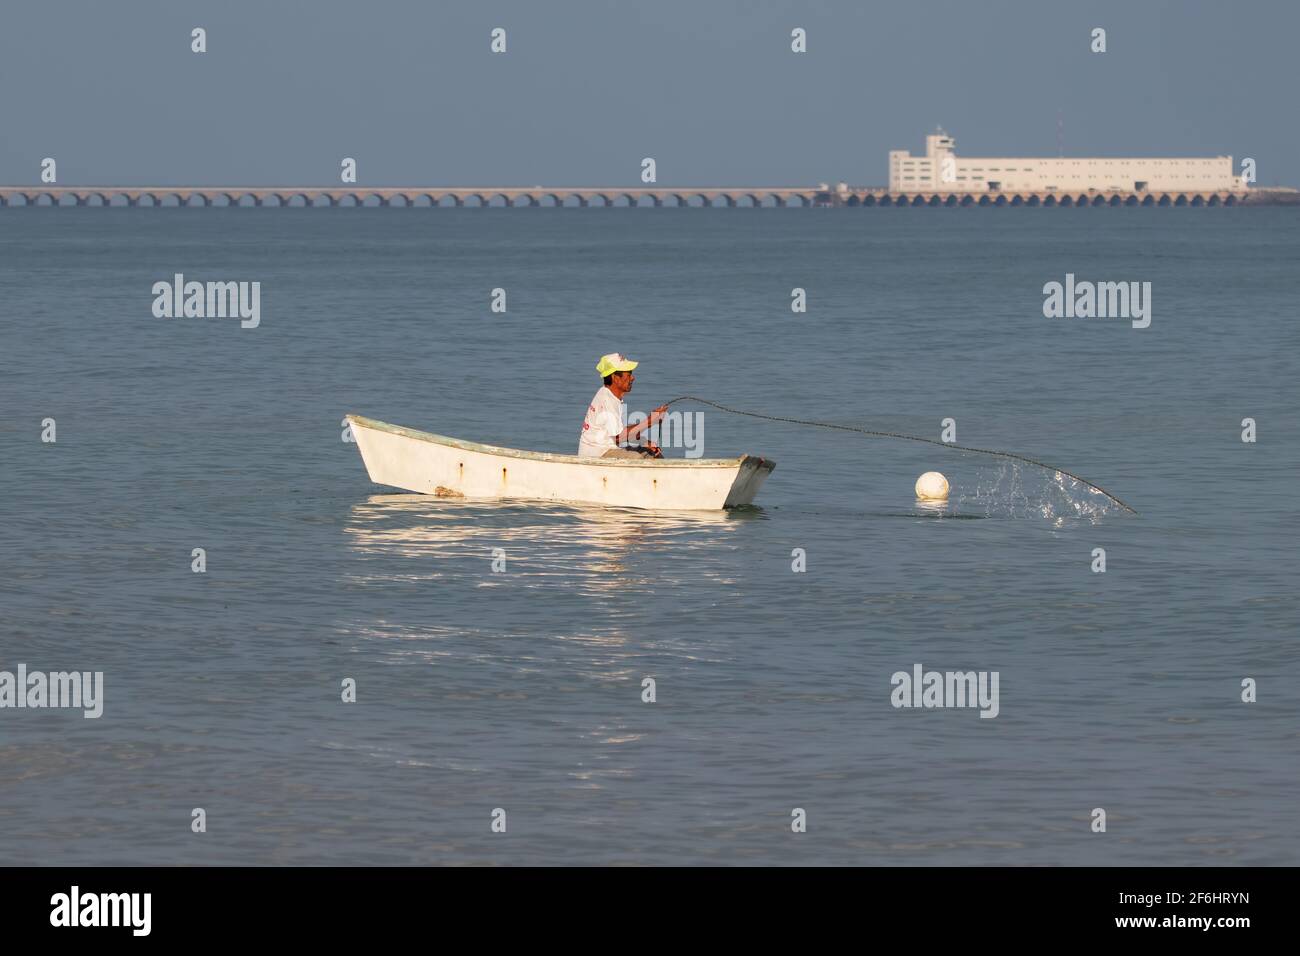 Pescatore in una piccola barca che tira nelle sue reti, un lungo molo commerciale è sullo sfondo - mare blu calmo in una giornata limpida Foto Stock